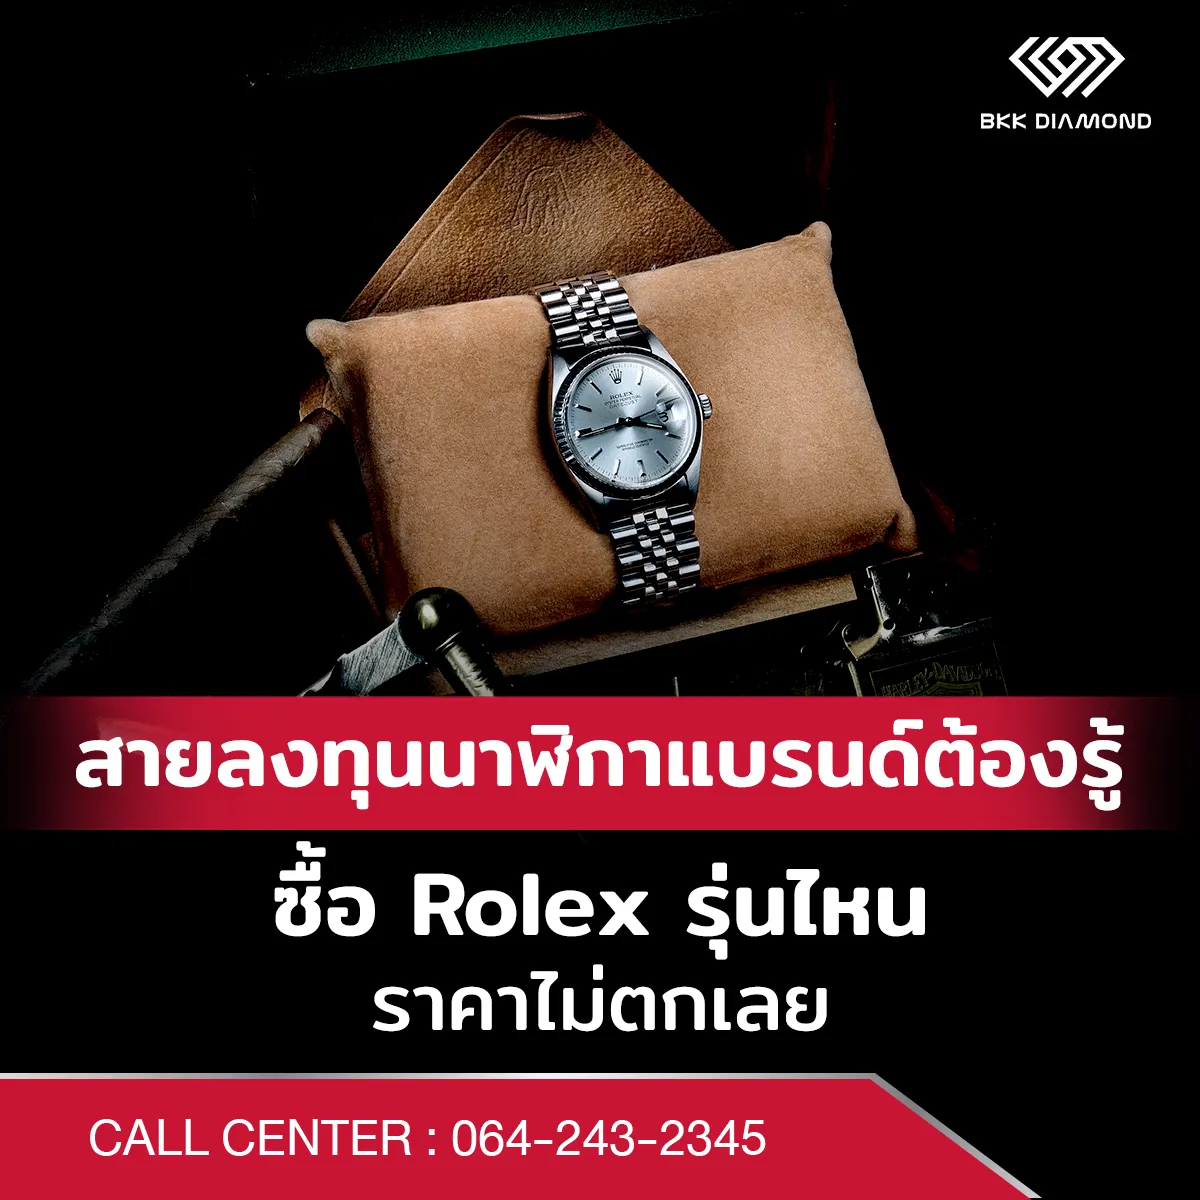 สายลงทุนนาฬิกาแบรนด์ต้องรู้ ซื้อ Rolex รุ่นไหนราคาไม่ตกเลย